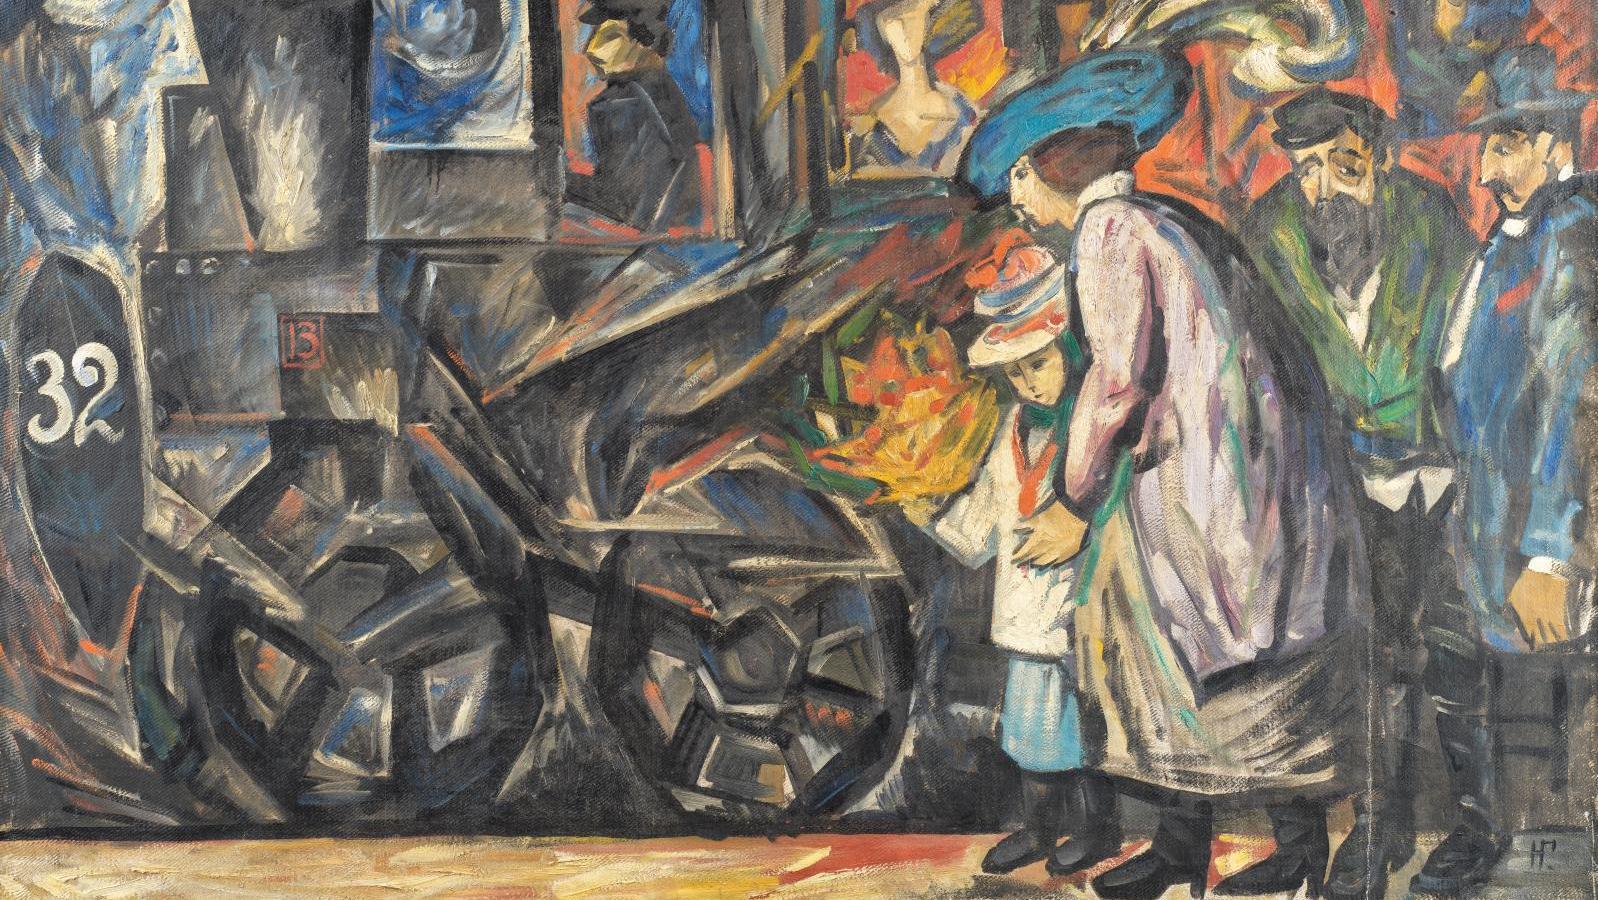 Natalia Gontcharova (1881-1962), La Gare, Moscou, huile sur toile, vers 1913-1914,... Le train aux enchères file à toute vapeur !